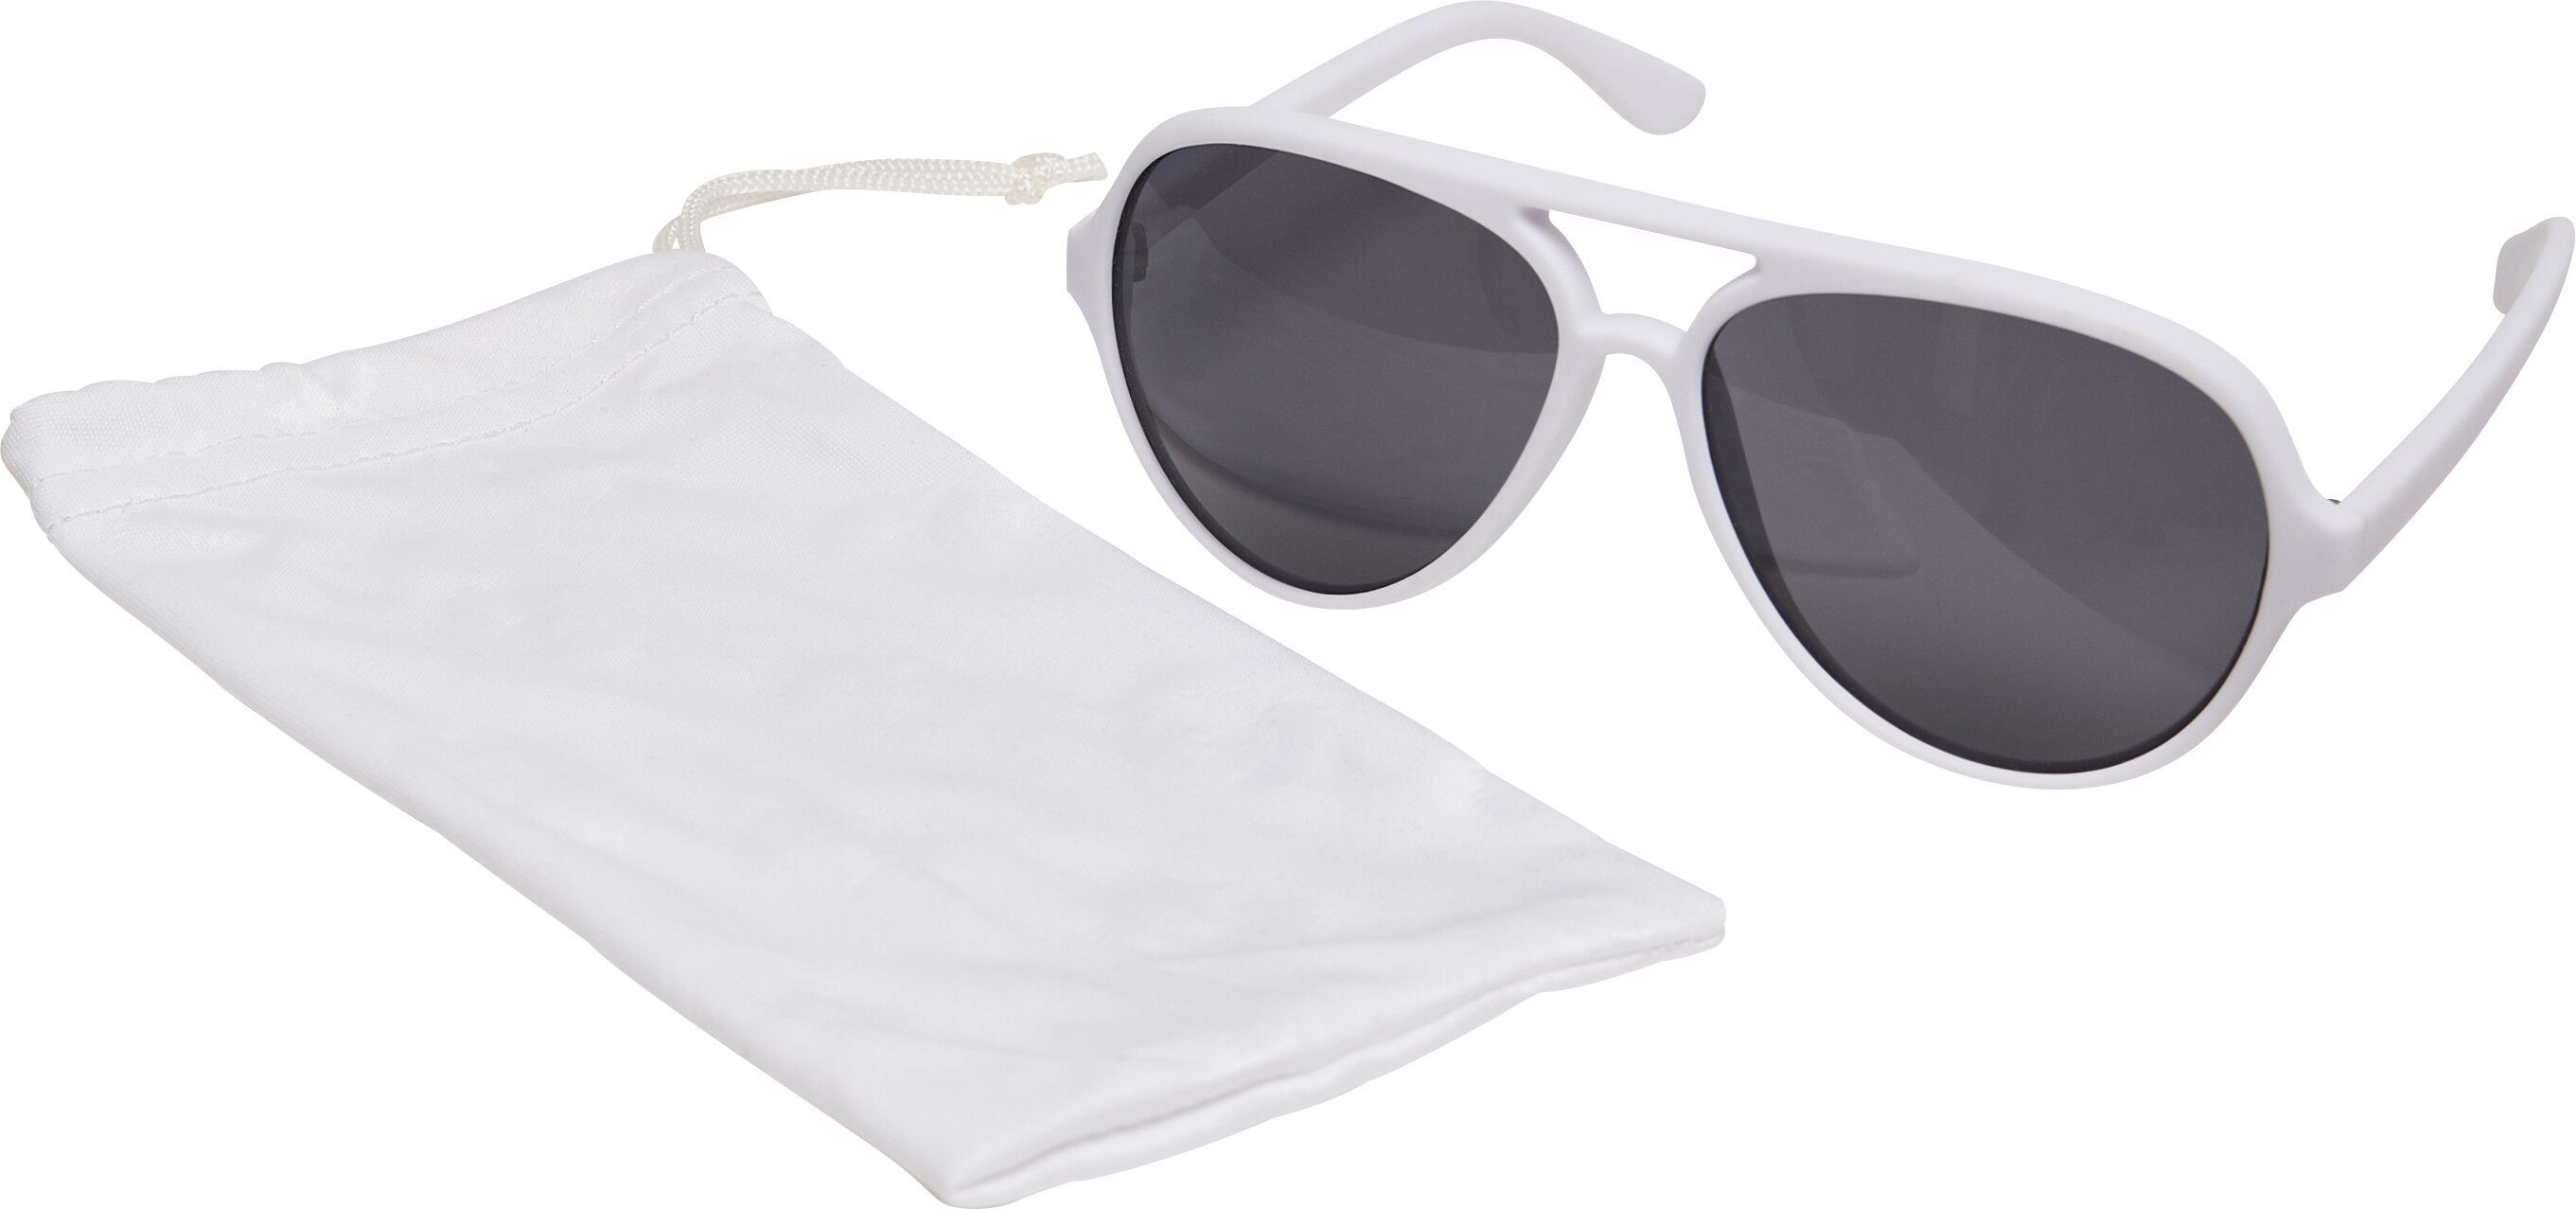 Sonnenbrille March Accessoires white Sunglasses MSTRDS